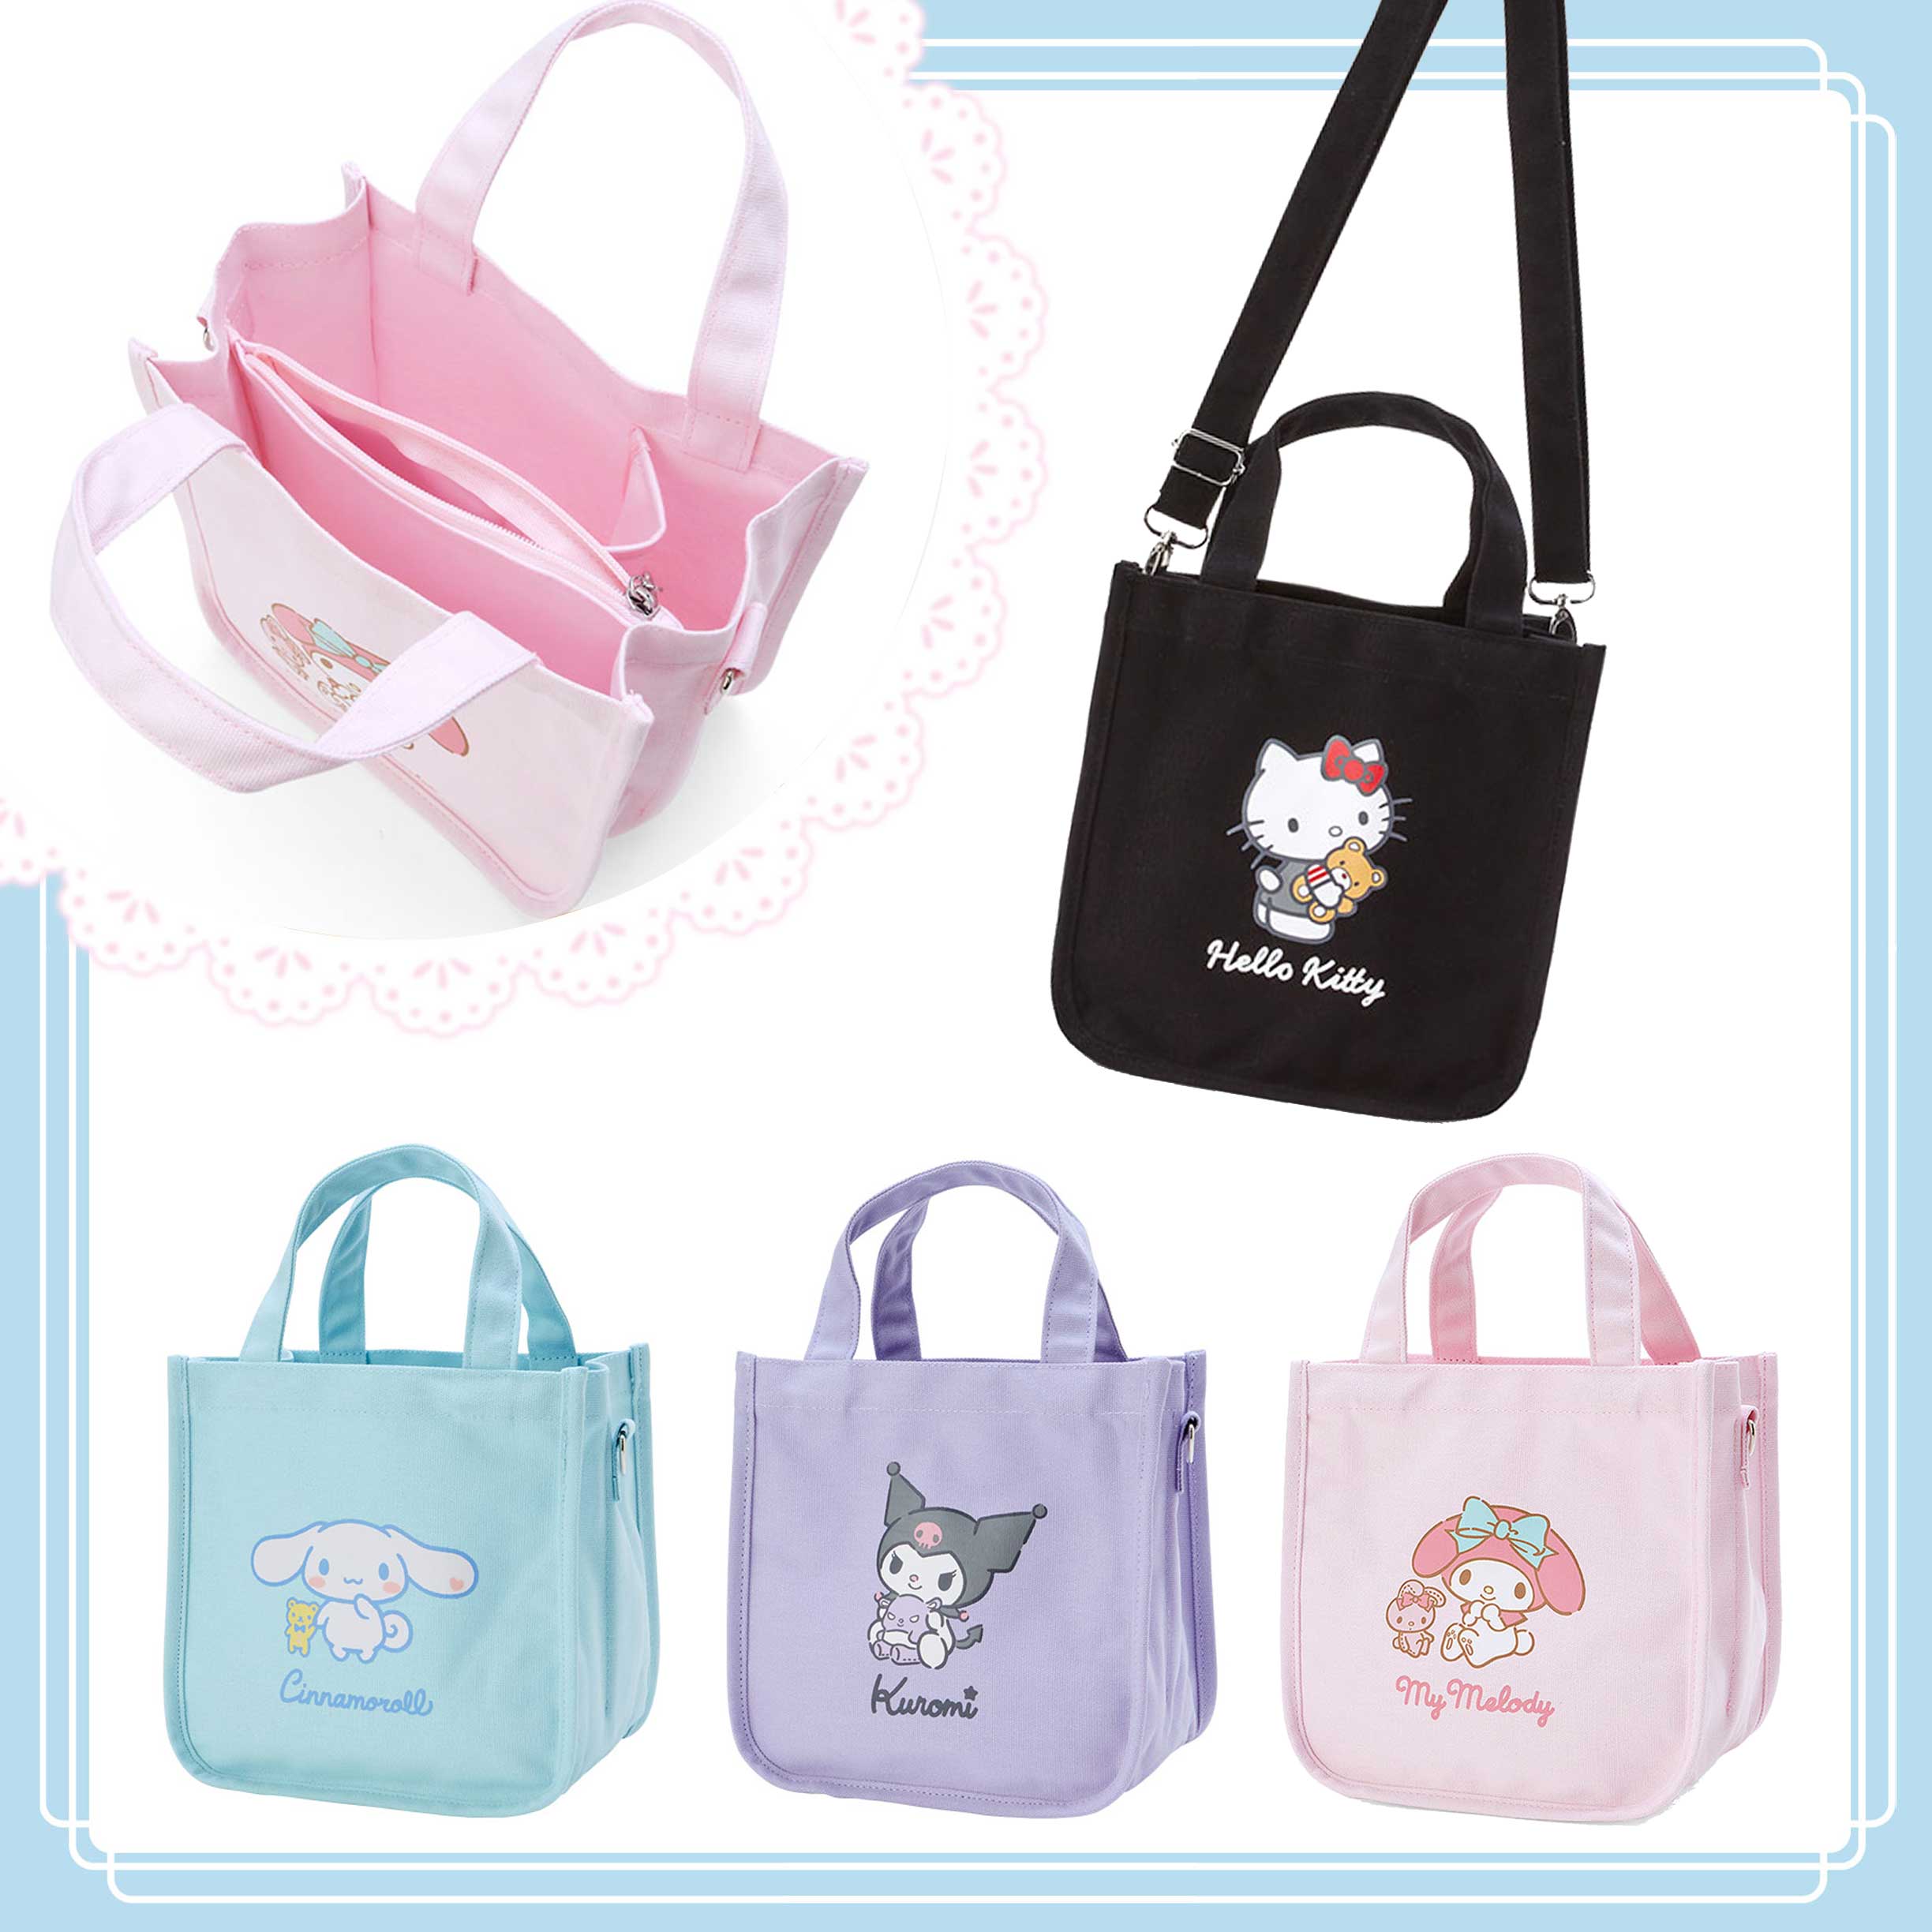 帆布兩用包-三麗鷗 Sanrio 日本進口正版授權